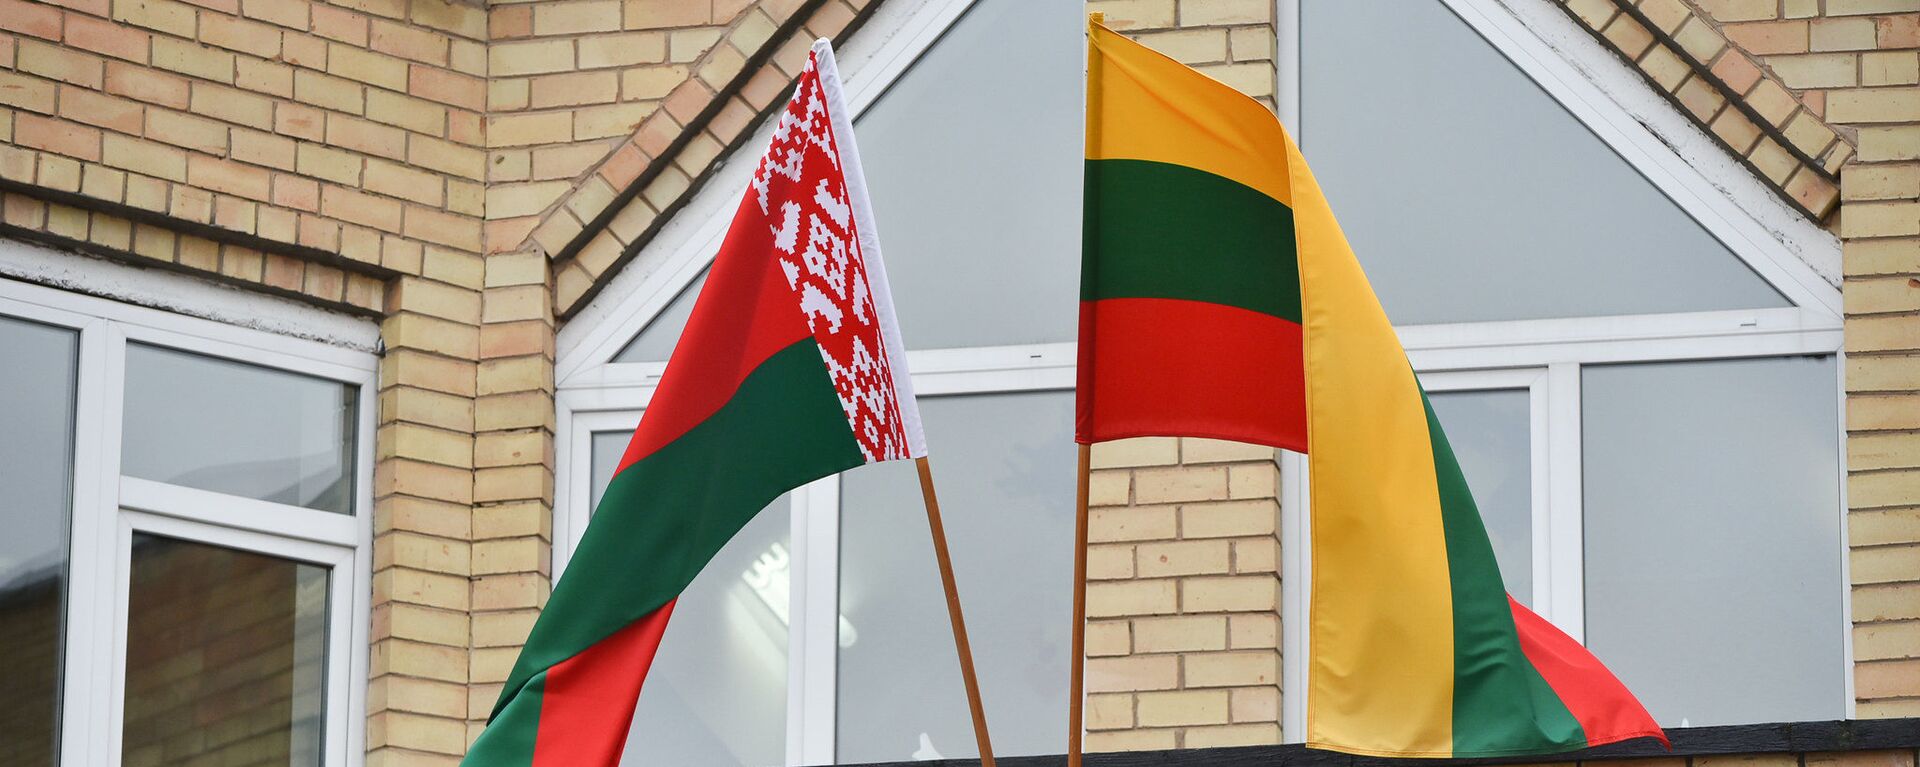 Флаги Литвы и Белоруссии, архивное фото - Sputnik Литва, 1920, 24.03.2021